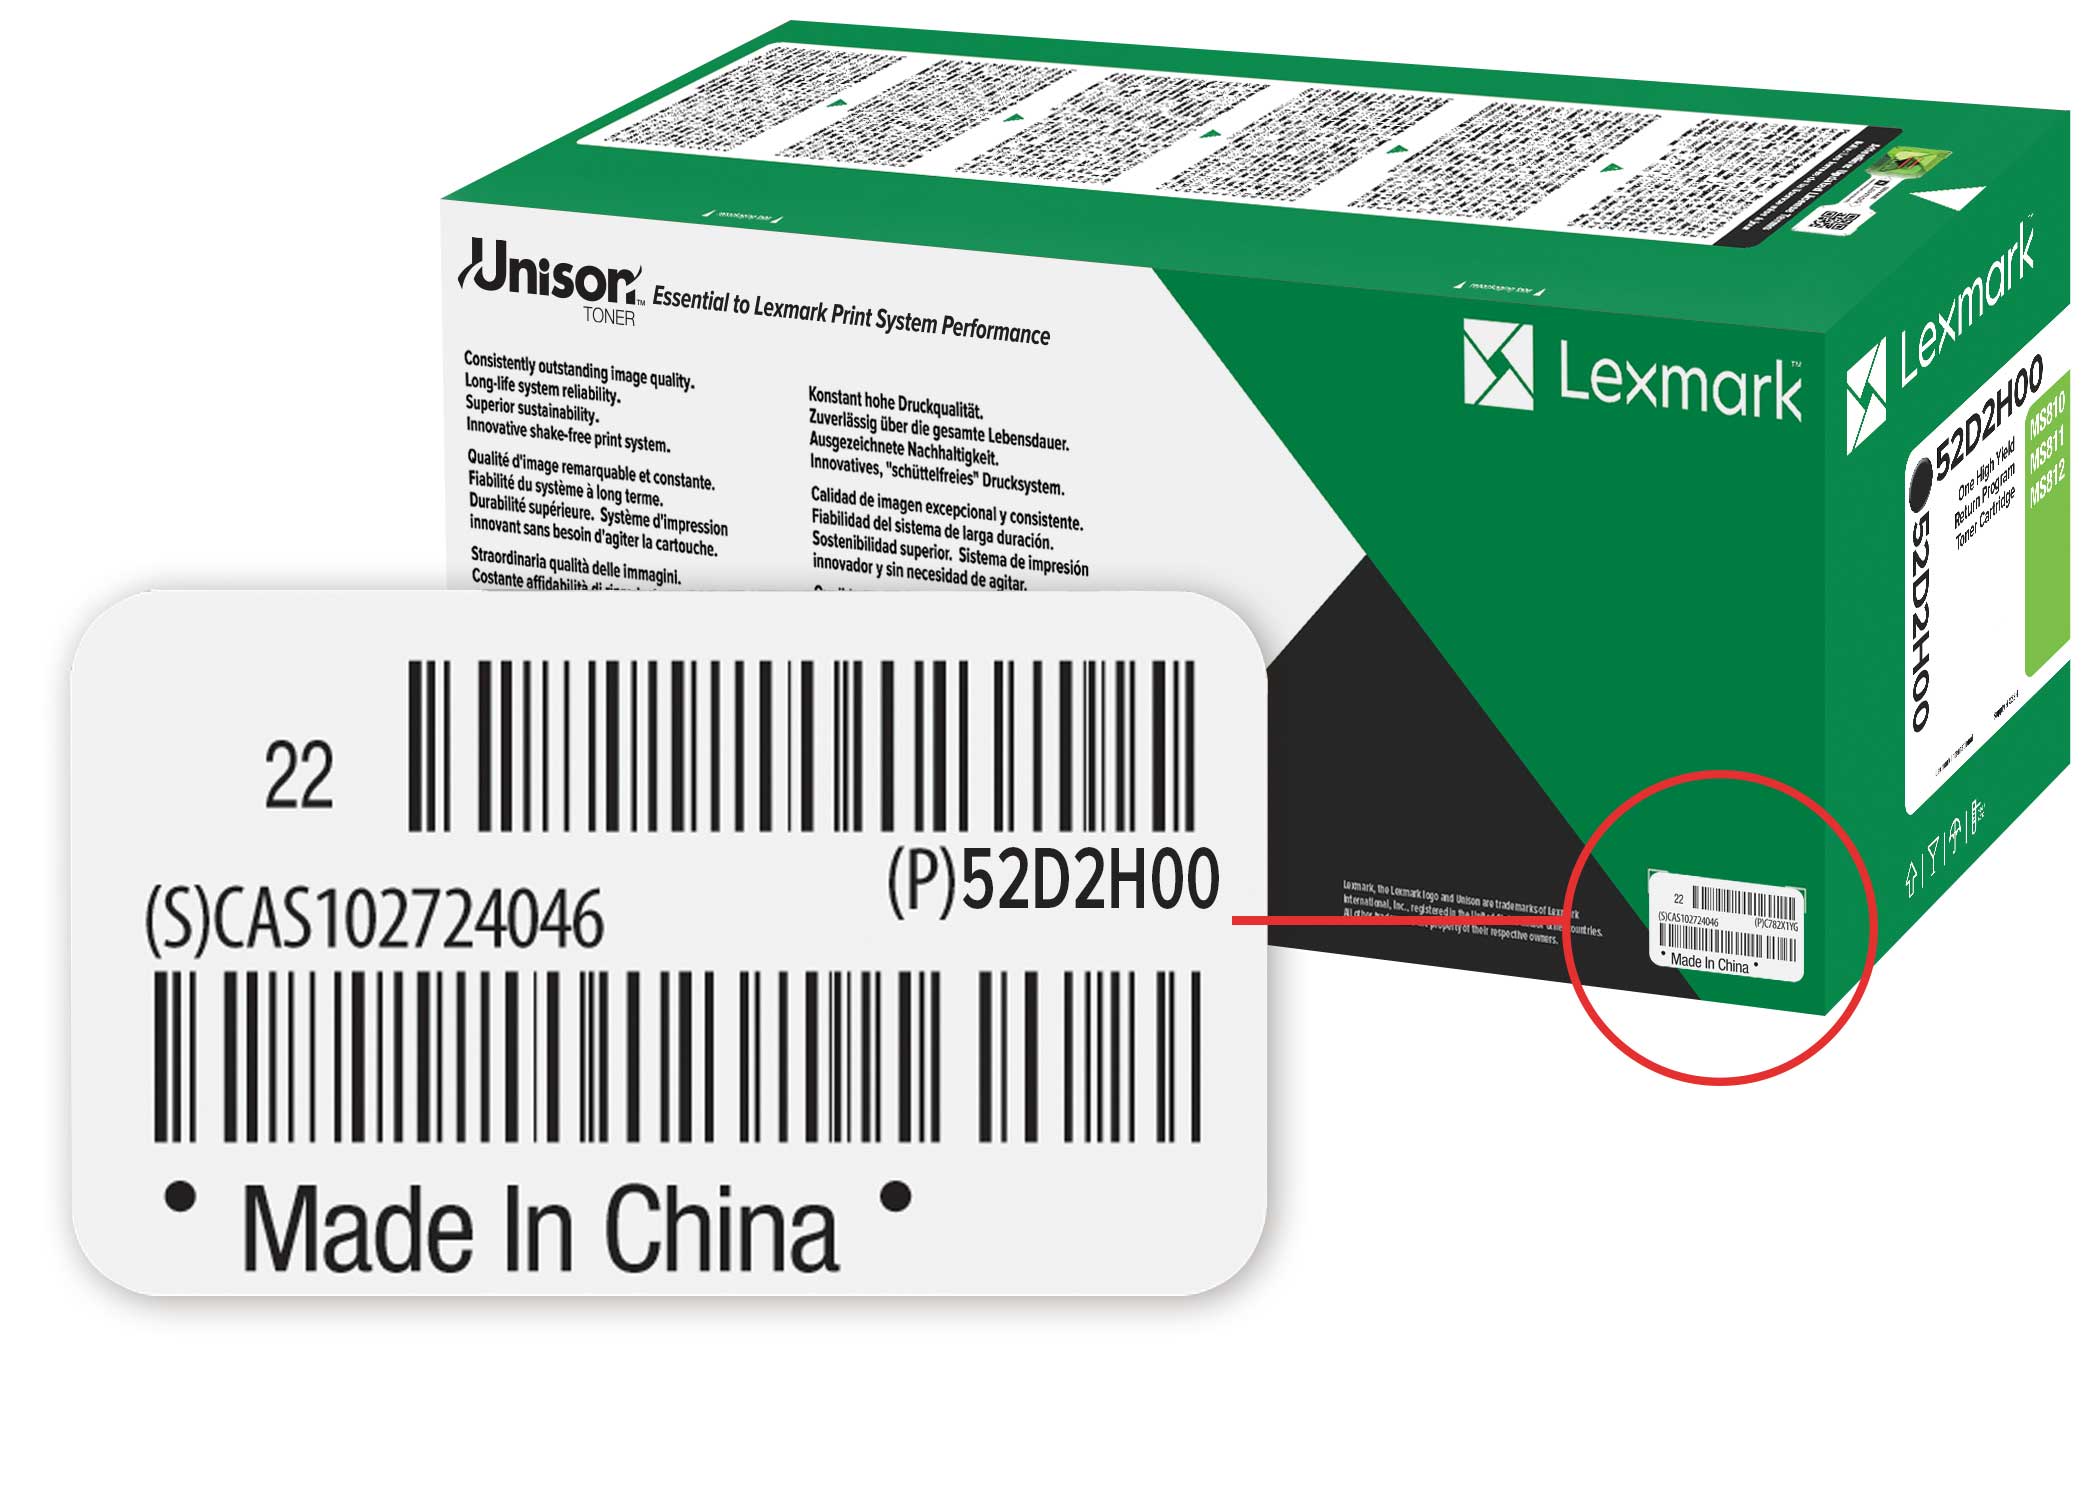 Serienummer op de verpakking van officiële Lexmark supplies